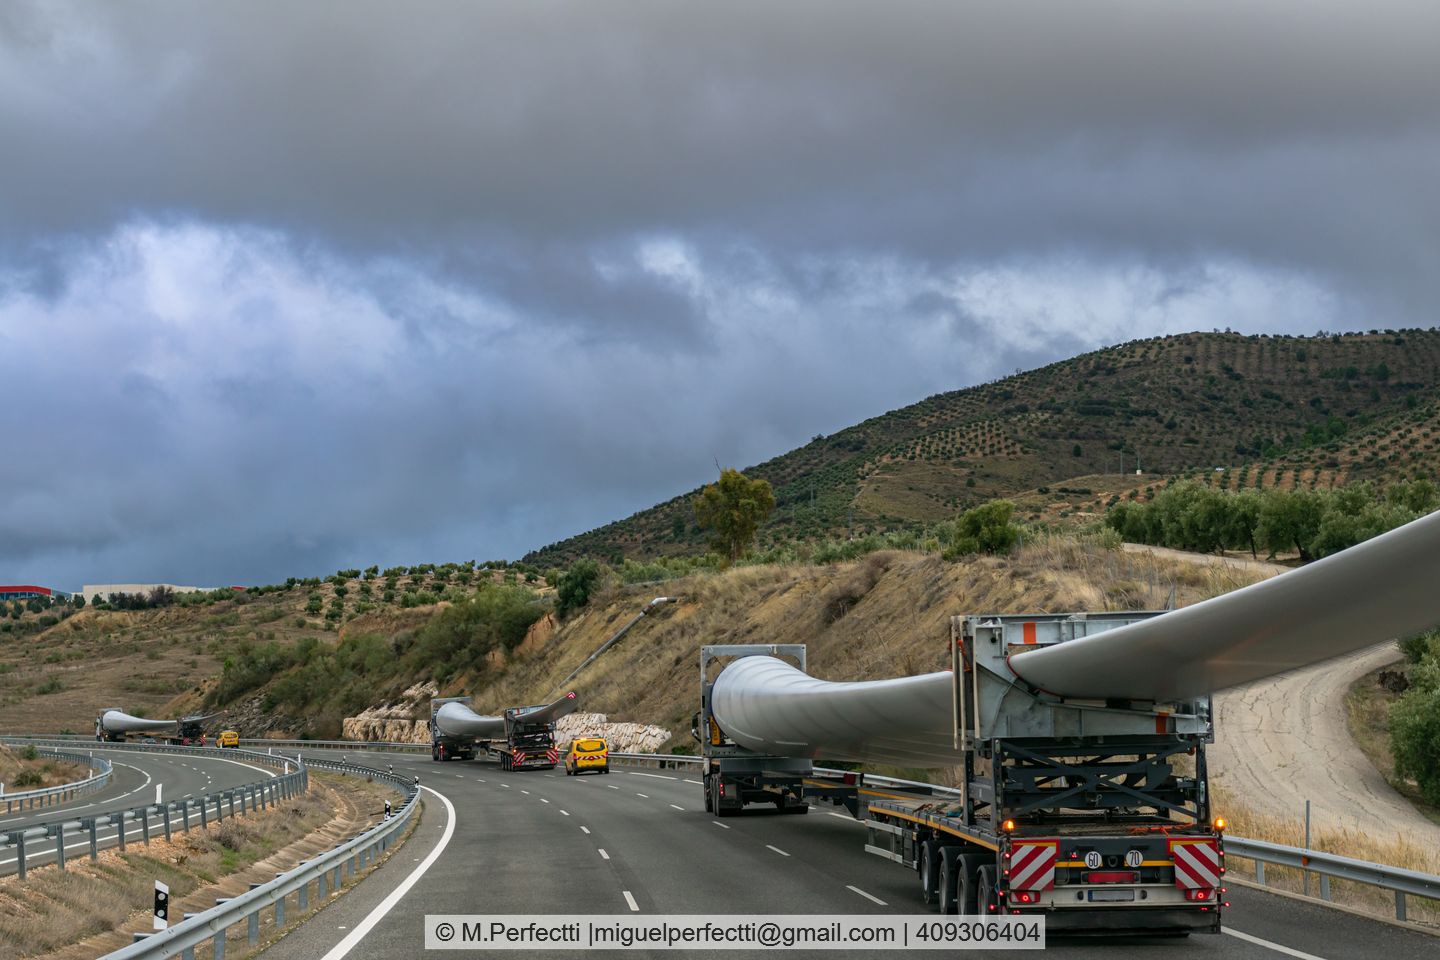 Turbinenschaufeln von Windrädern werden per LKW transportiert.